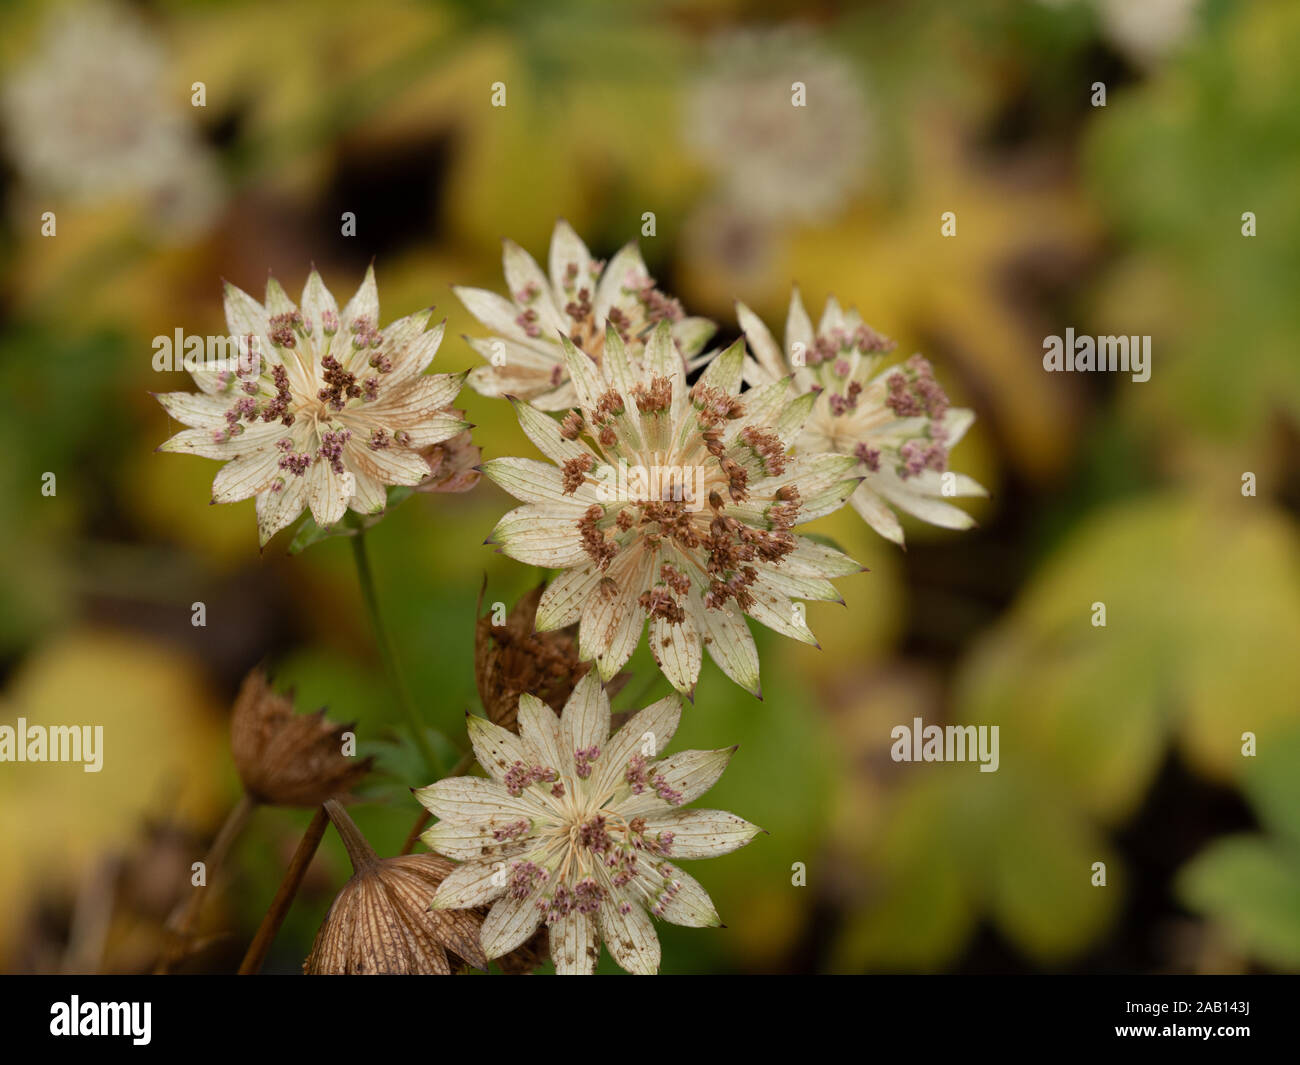 Closeup of Astrantia 'Buckland' flowering in an autumn garden Stock Photo